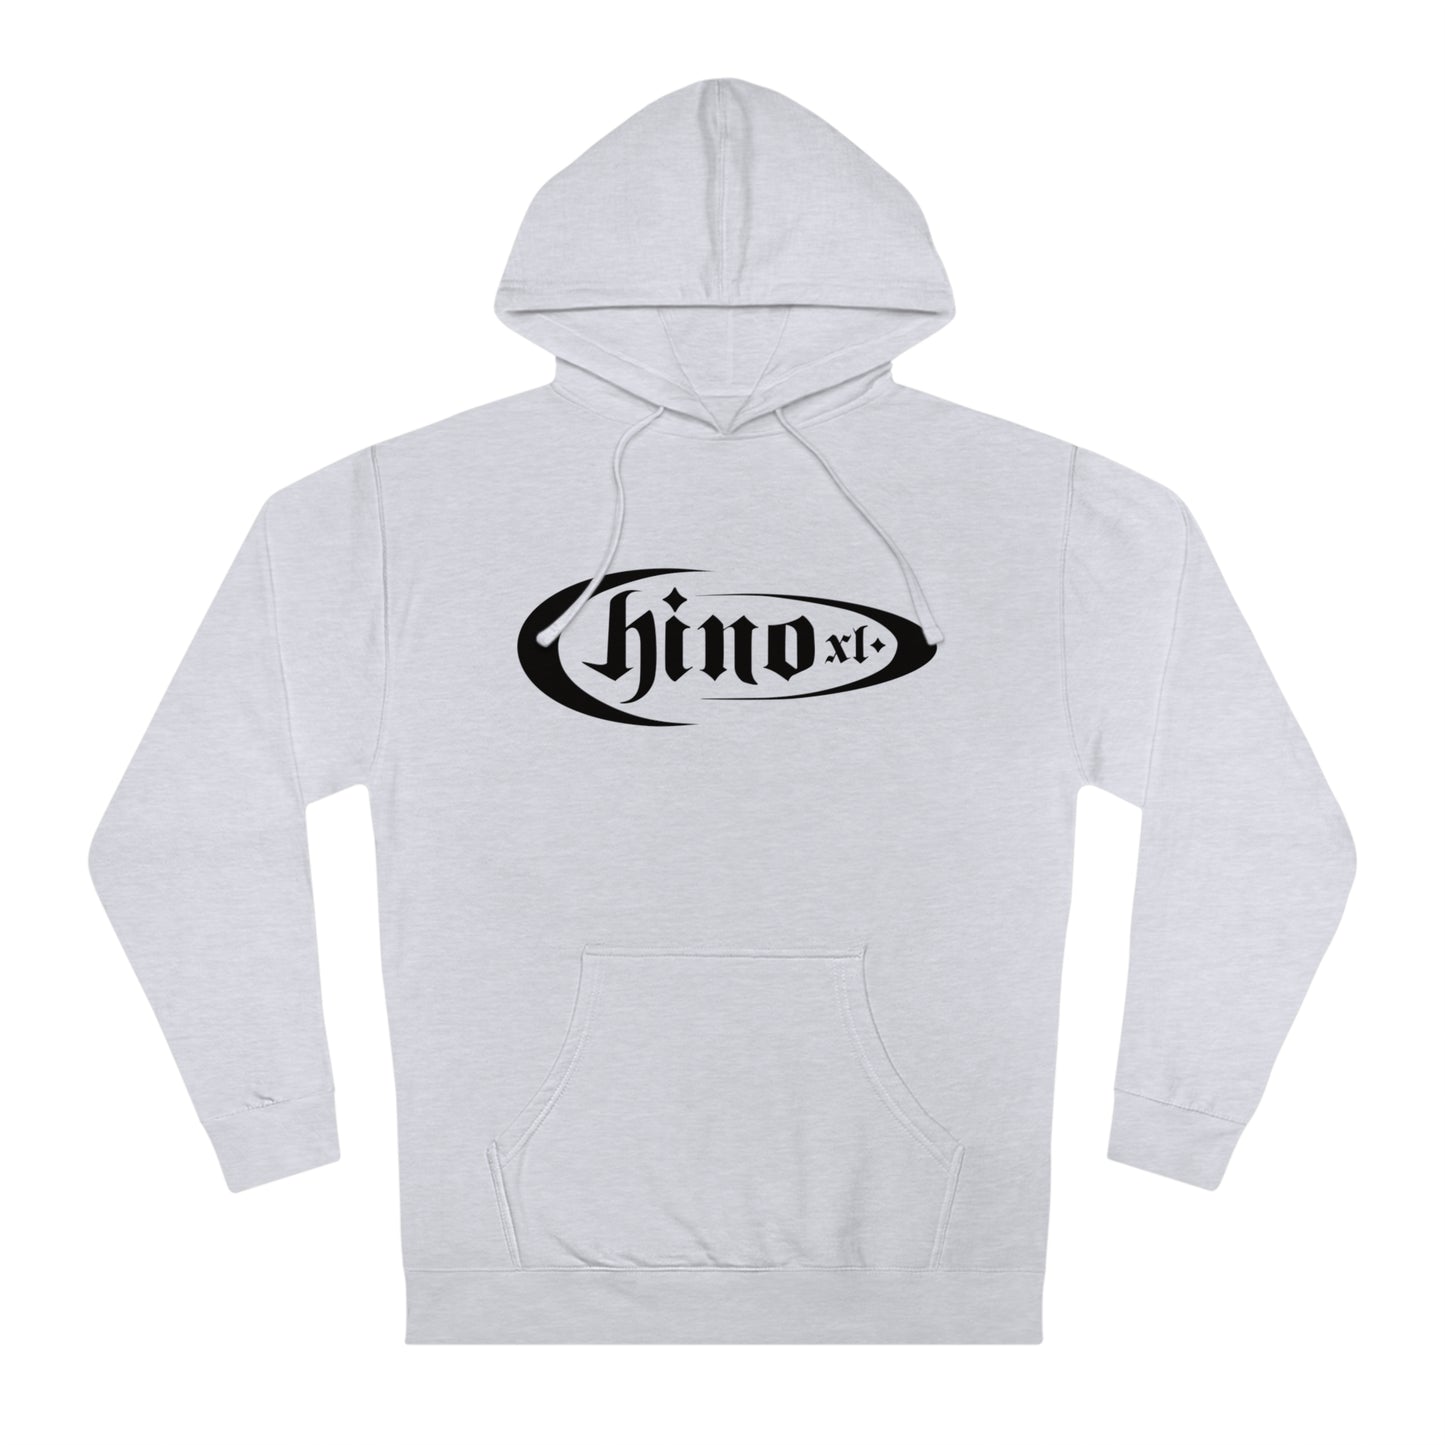 Chino XL - Signature Hoodie